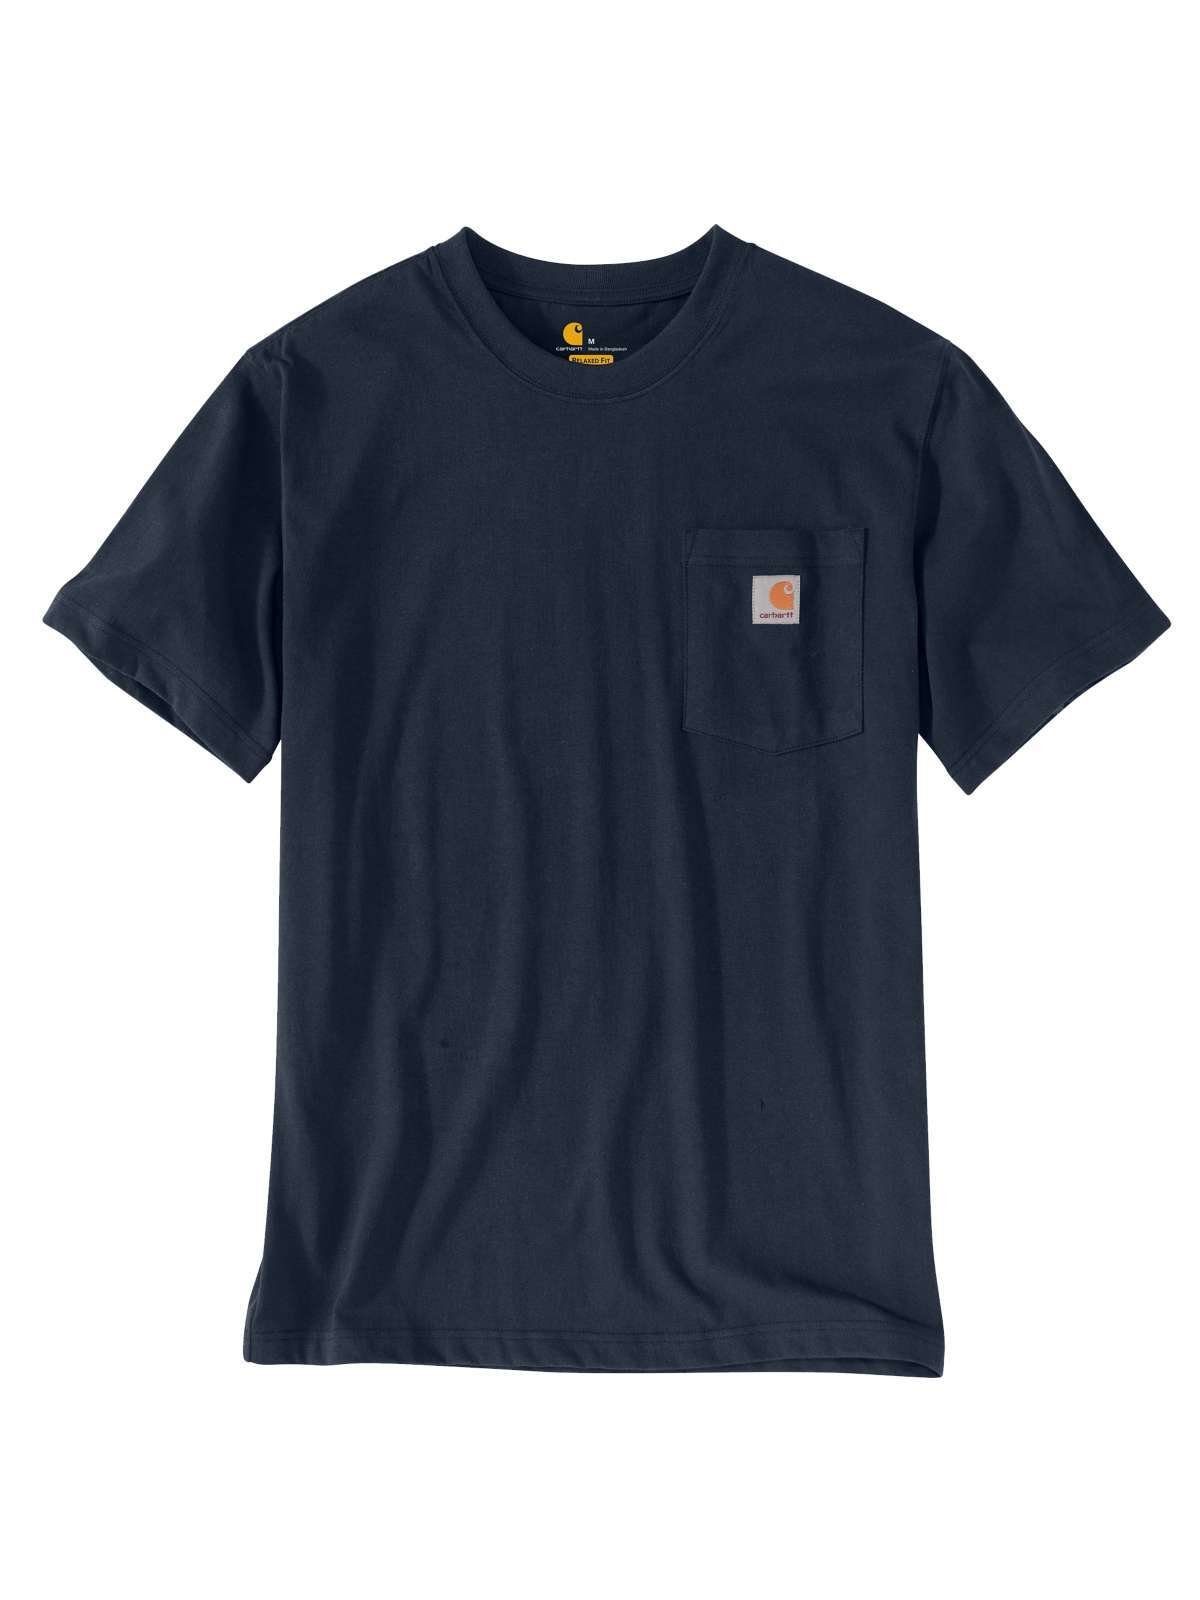 Carhartt T-Shirt Carhartt Pocket Herren T-Shirt schwarz NAVY